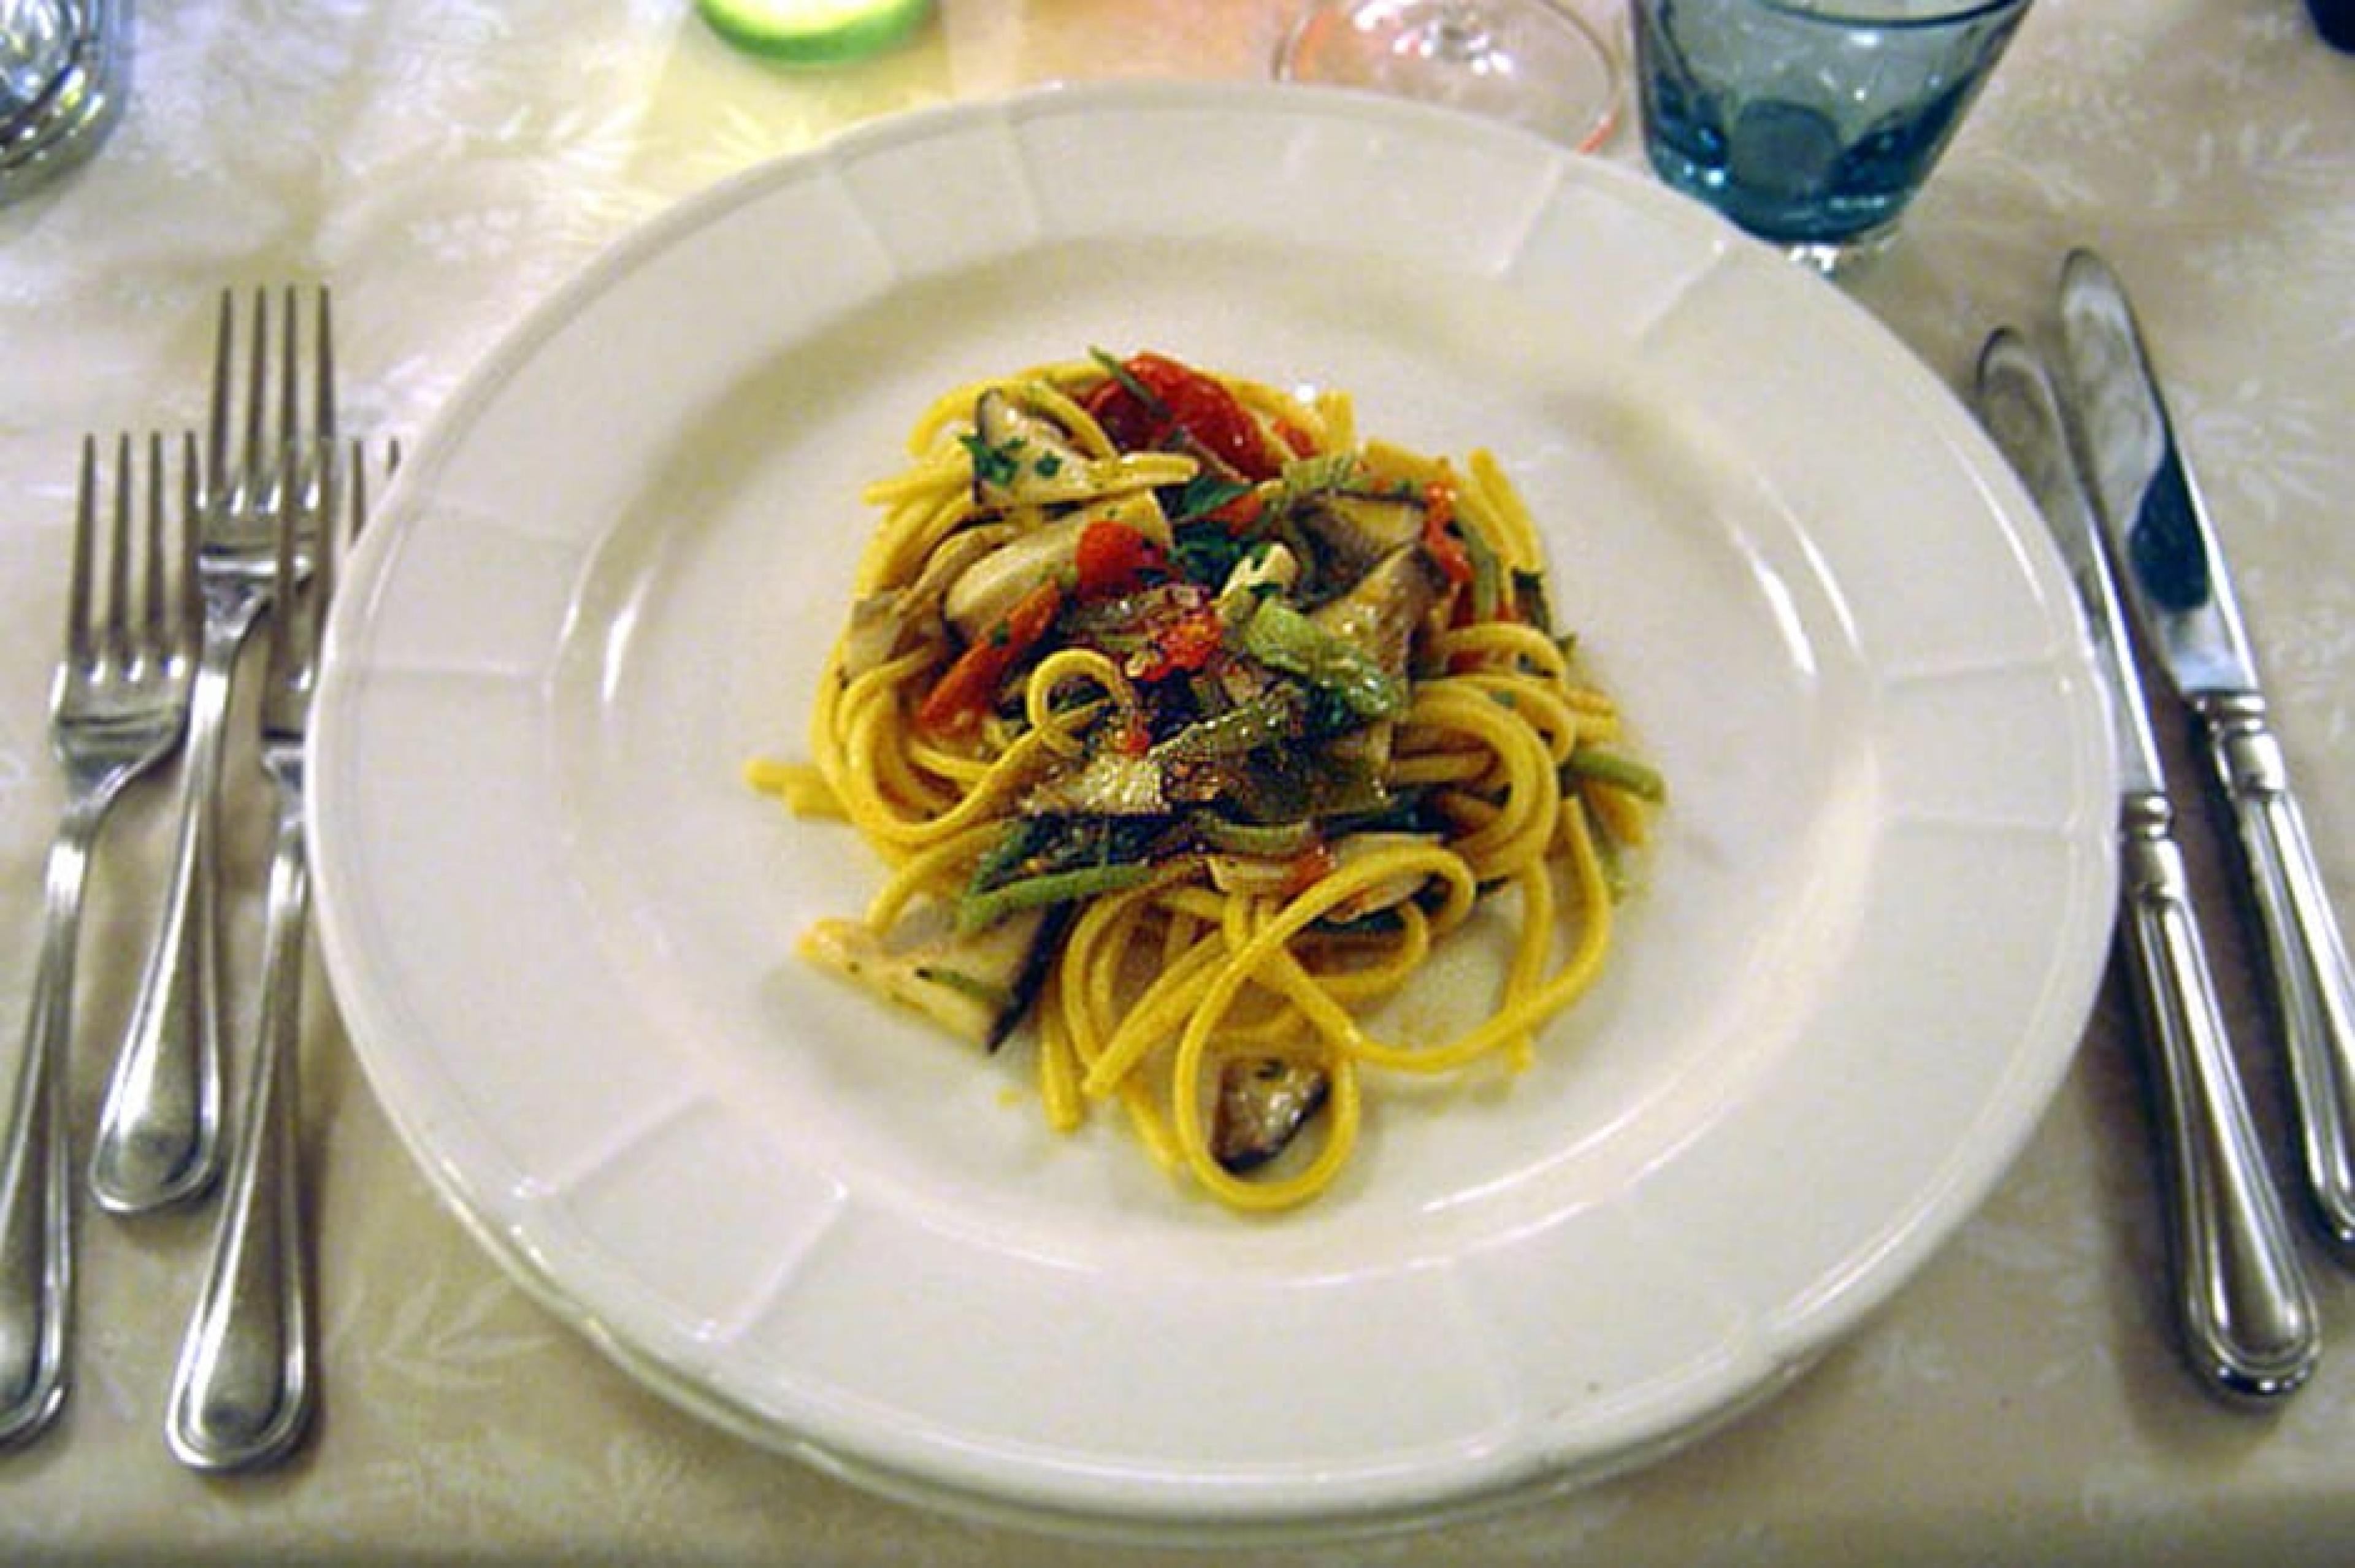 Food at Osteria del Tempo Perso, Puglia, Italy